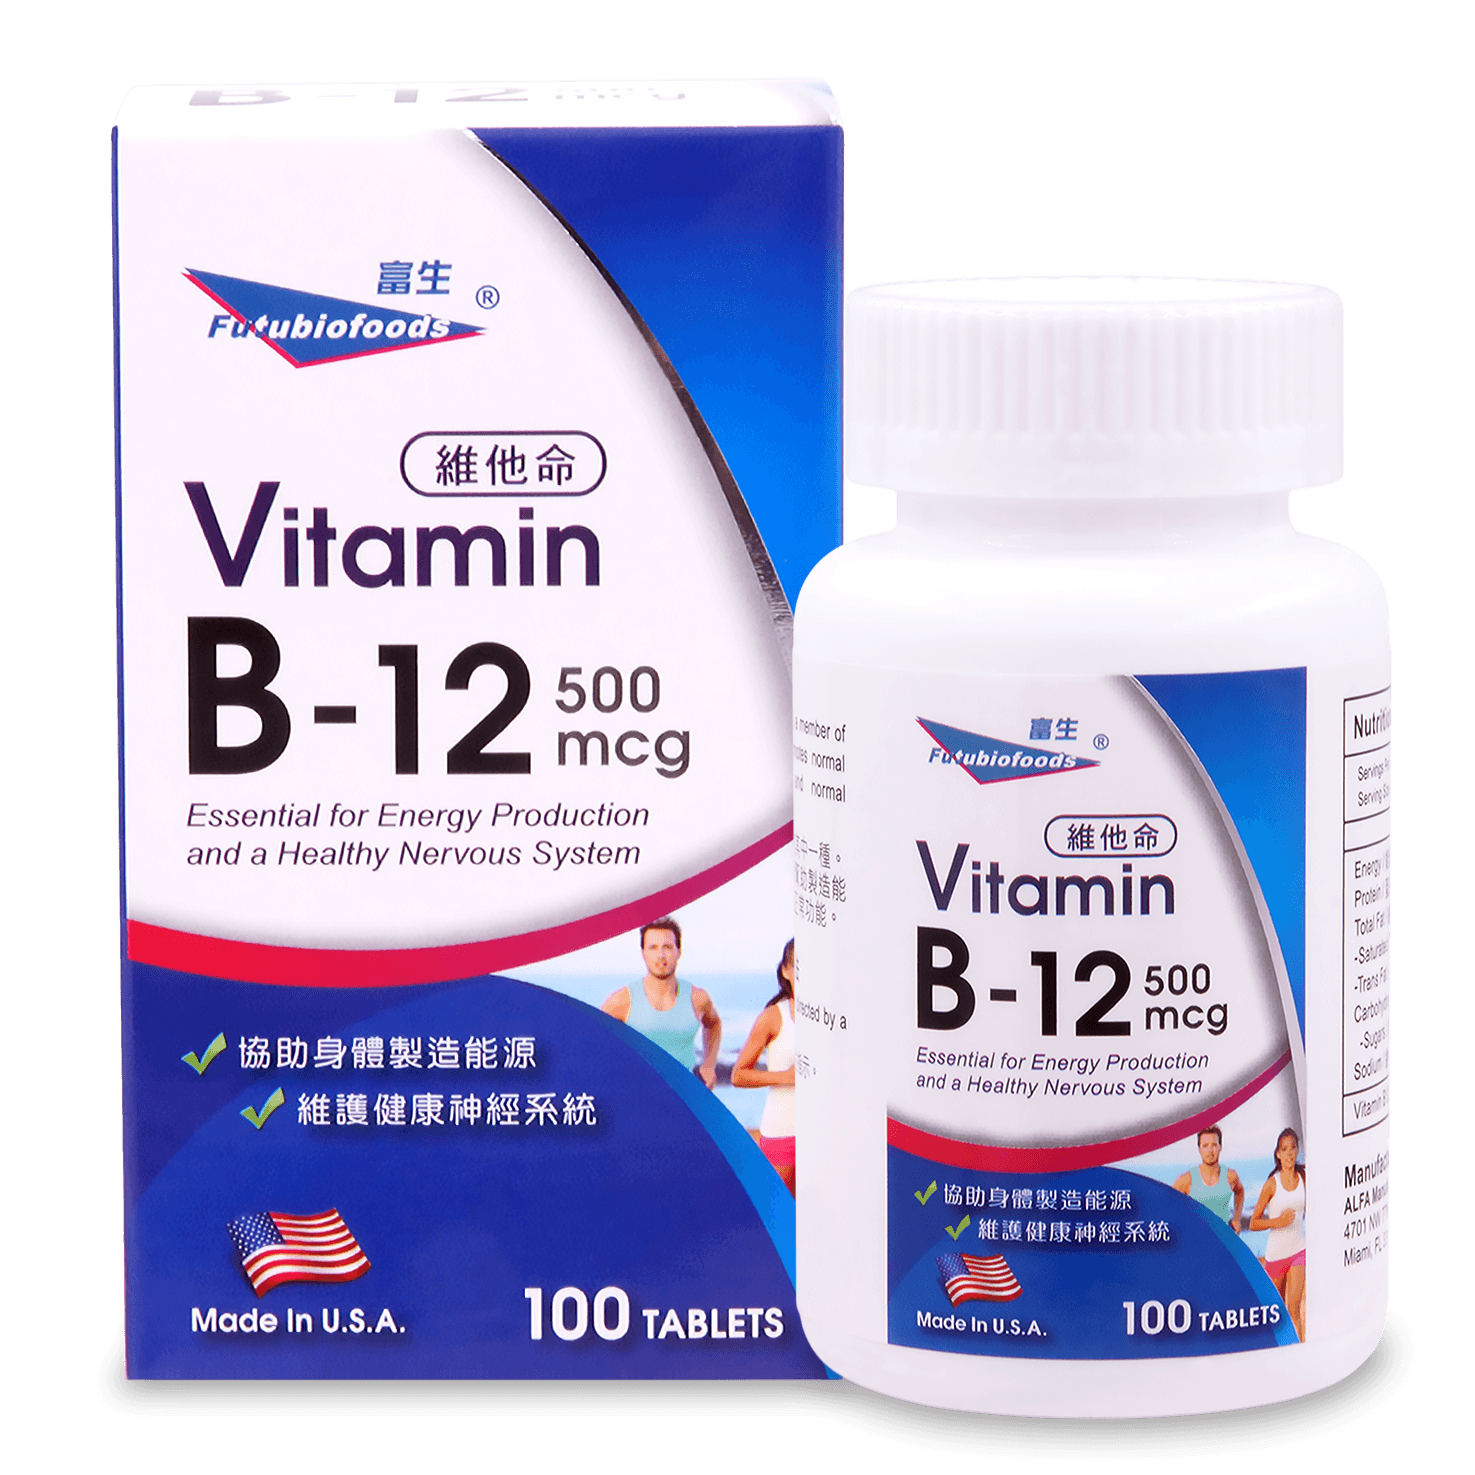 富生維他命B-12 500mcg 100's  Futubiofoods Vitamin B-12 500mcg 100's